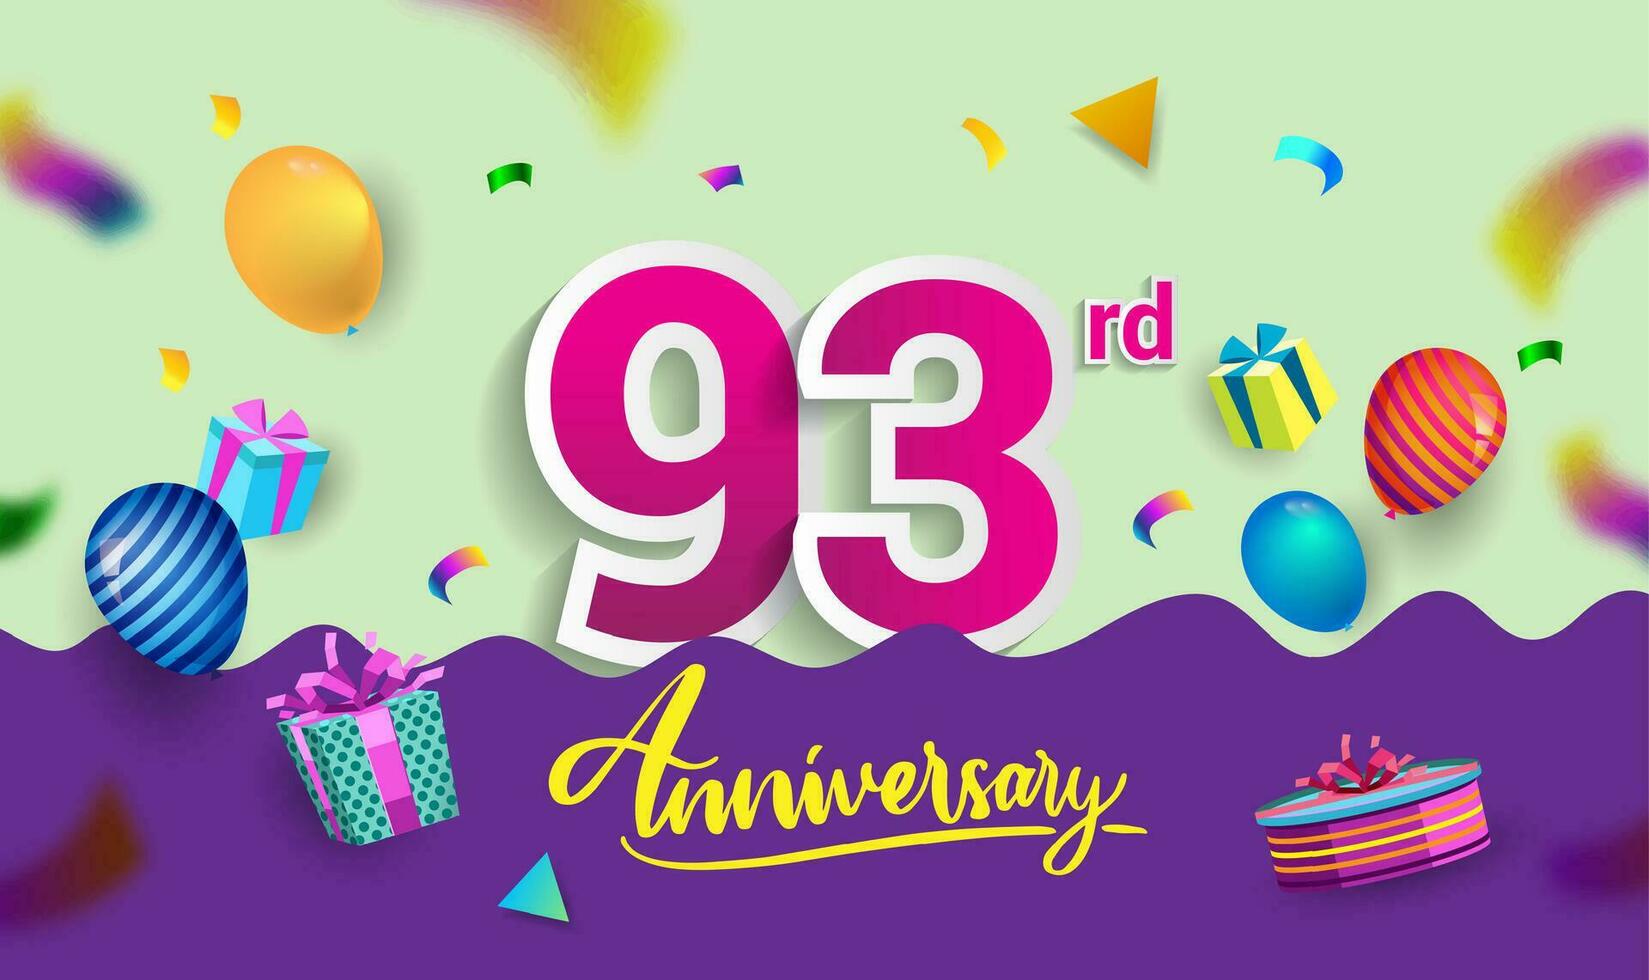 93 anni anniversario celebrazione disegno, con regalo scatola e palloncini, nastro, colorato vettore modello elementi per il tuo compleanno festeggiare festa.